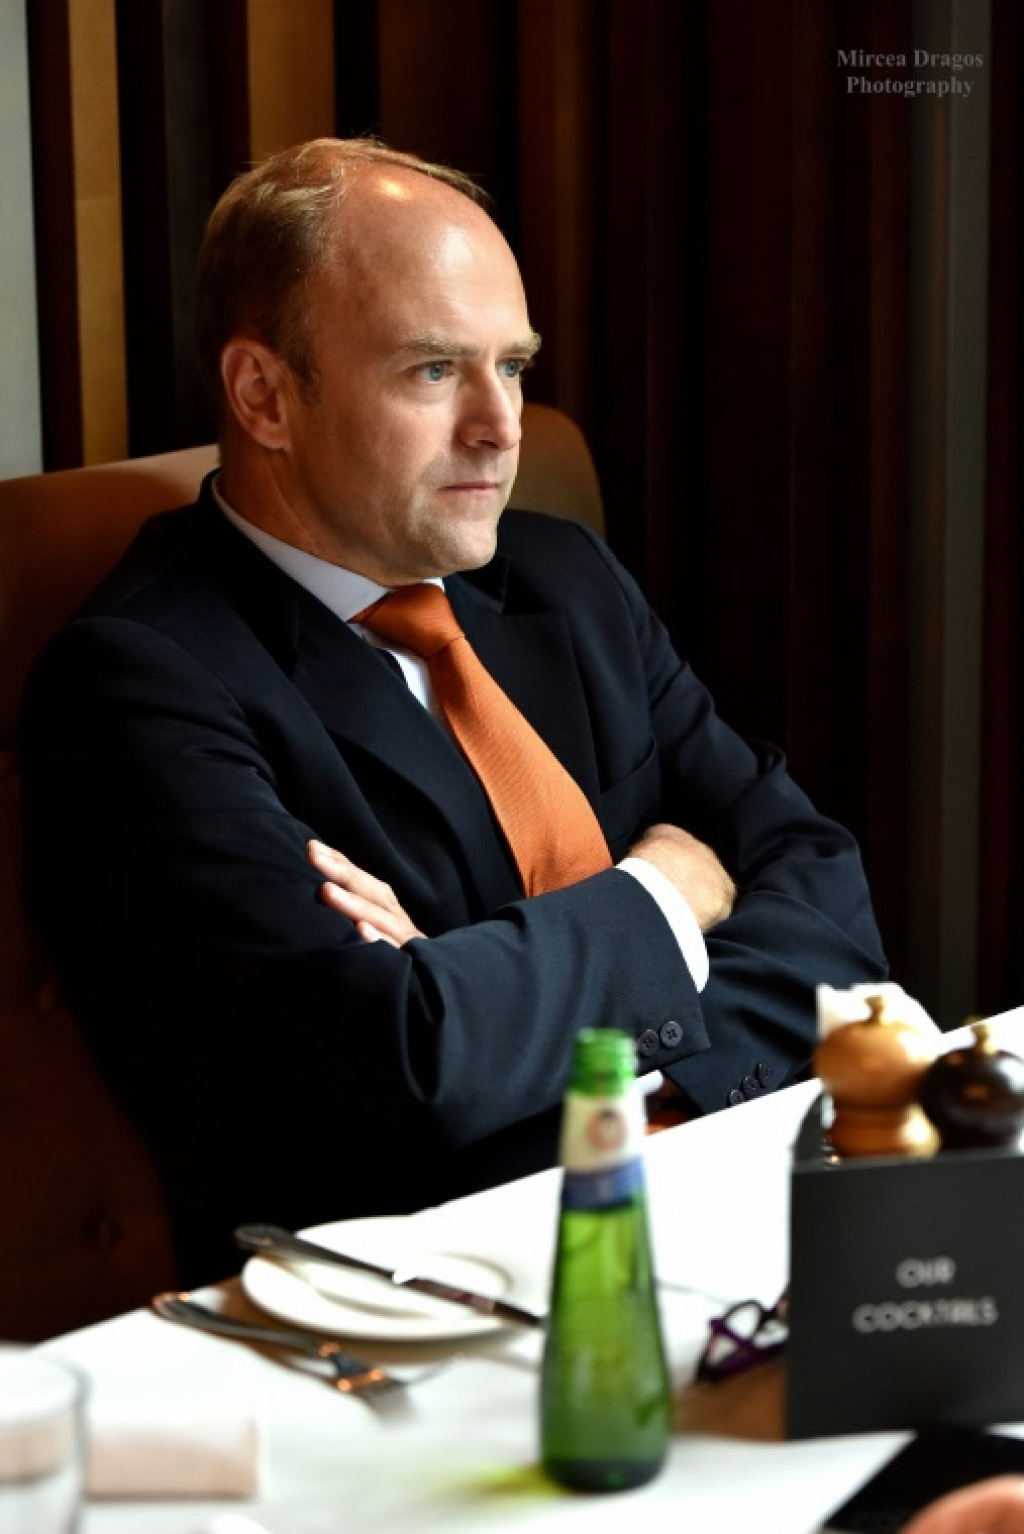 Gilles Antoine, seful L'Oreal Romania: De multe ori incerc sa gasesc solutii si nu scuze